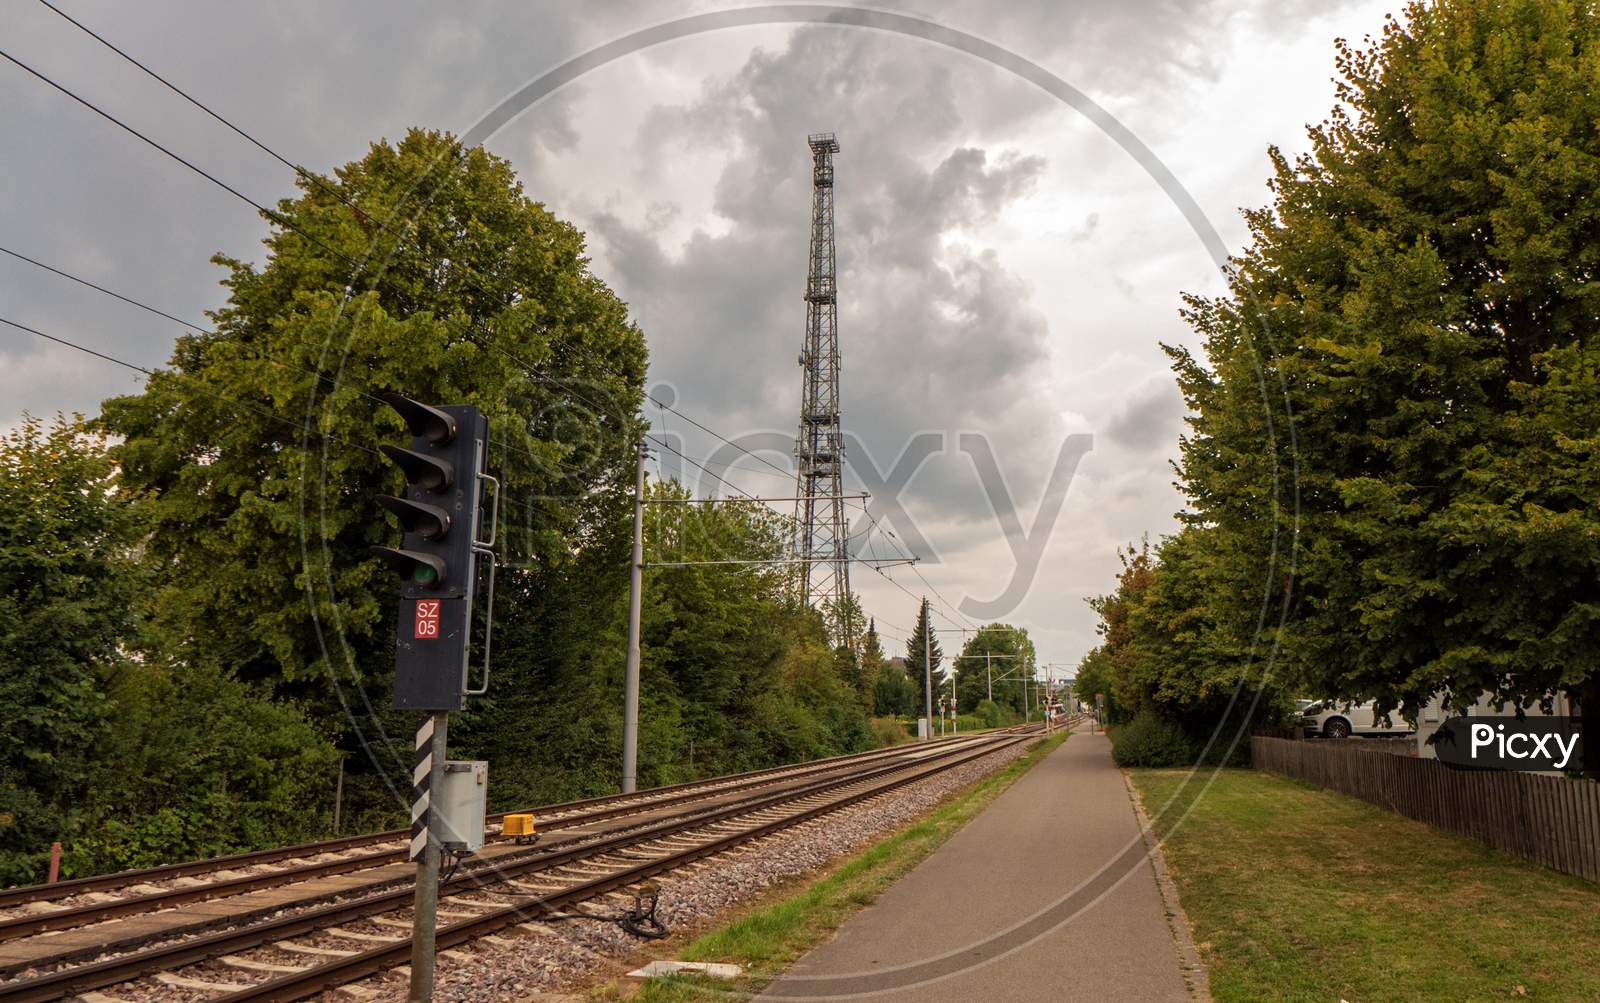 A Walk Near A Railway In A German City